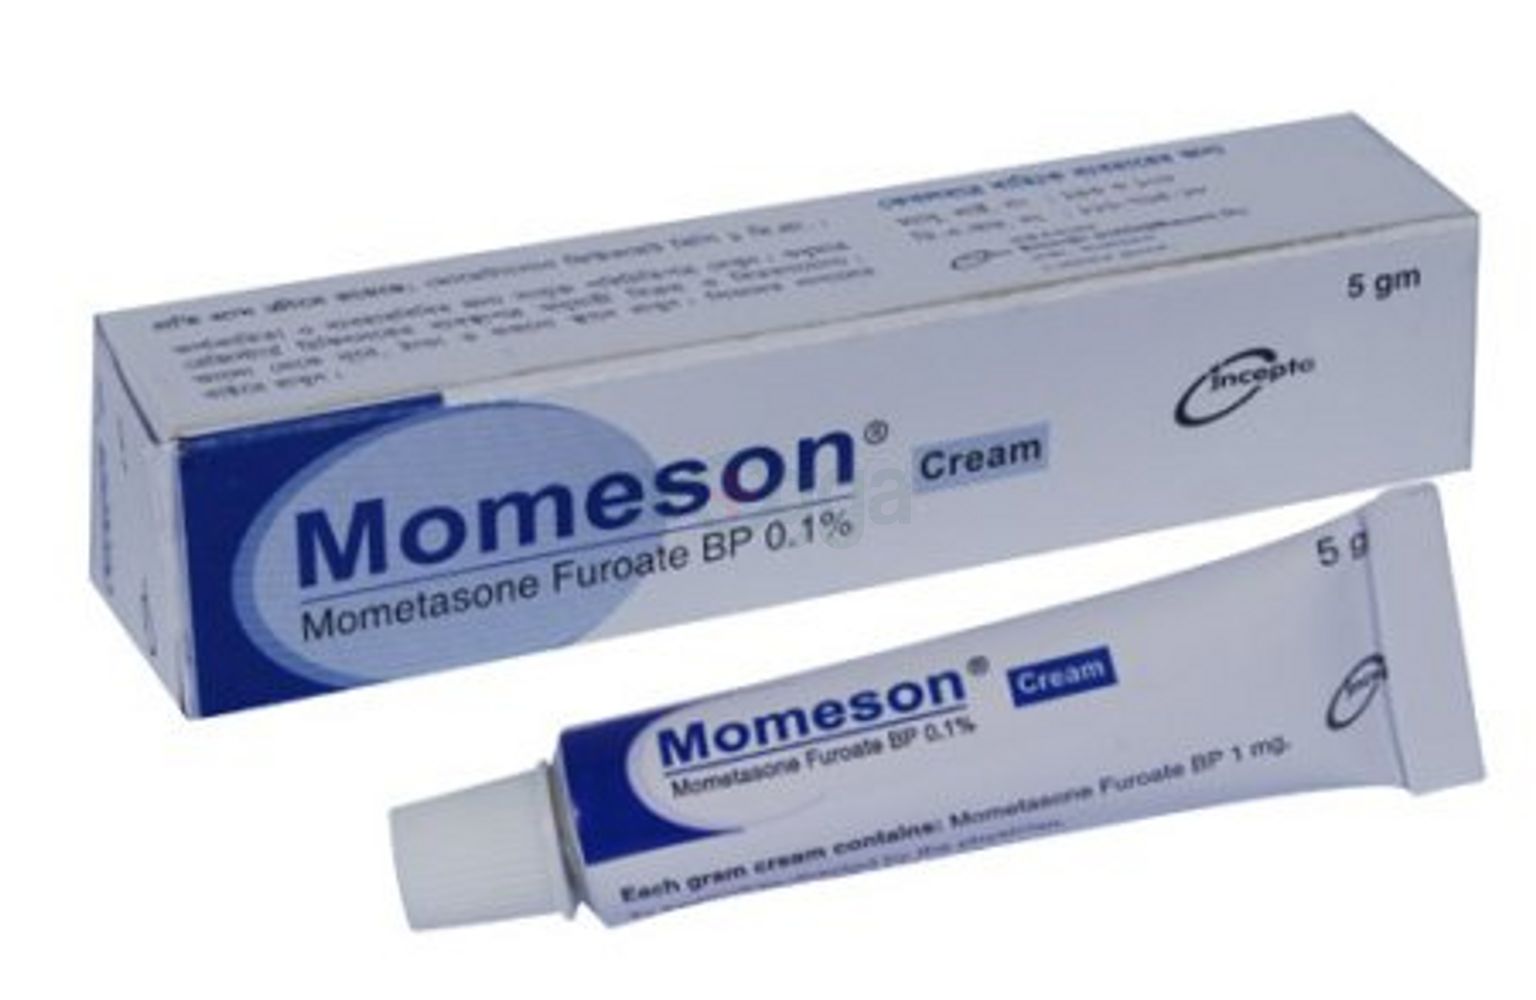 Momeson Cream